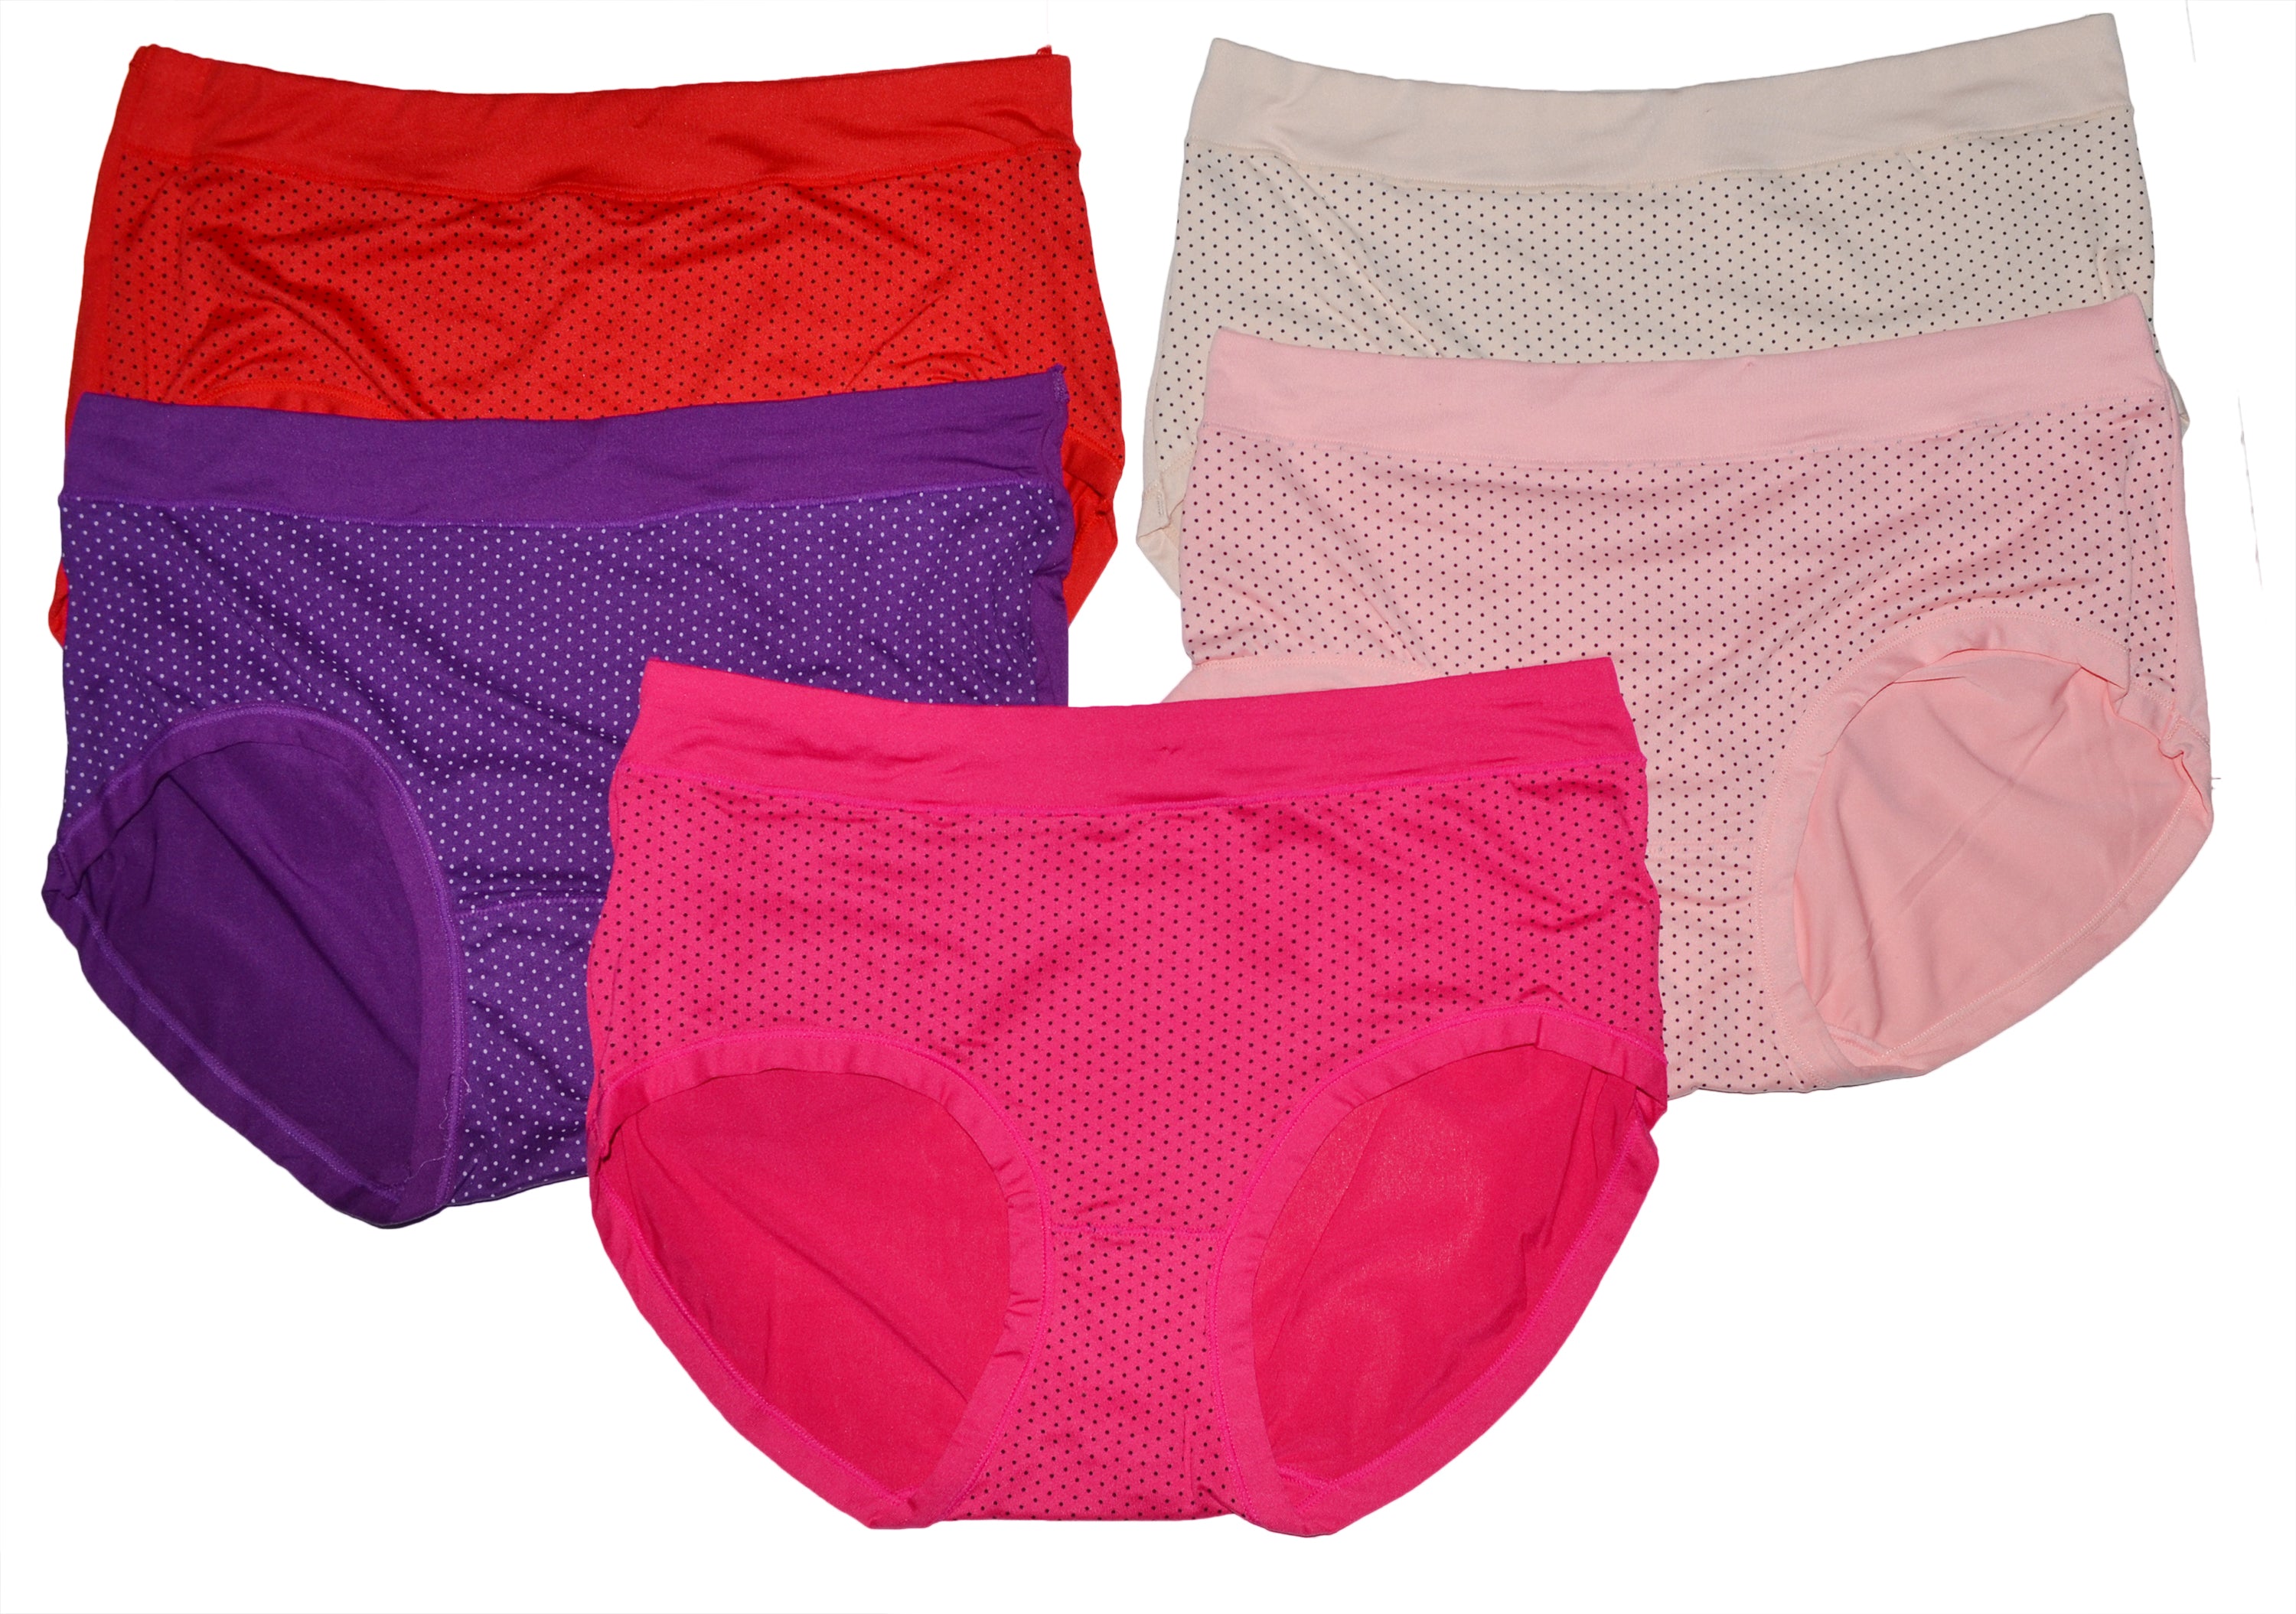 Wholesale Lady Cotton Panties – OPT FASHION WHOLESALE